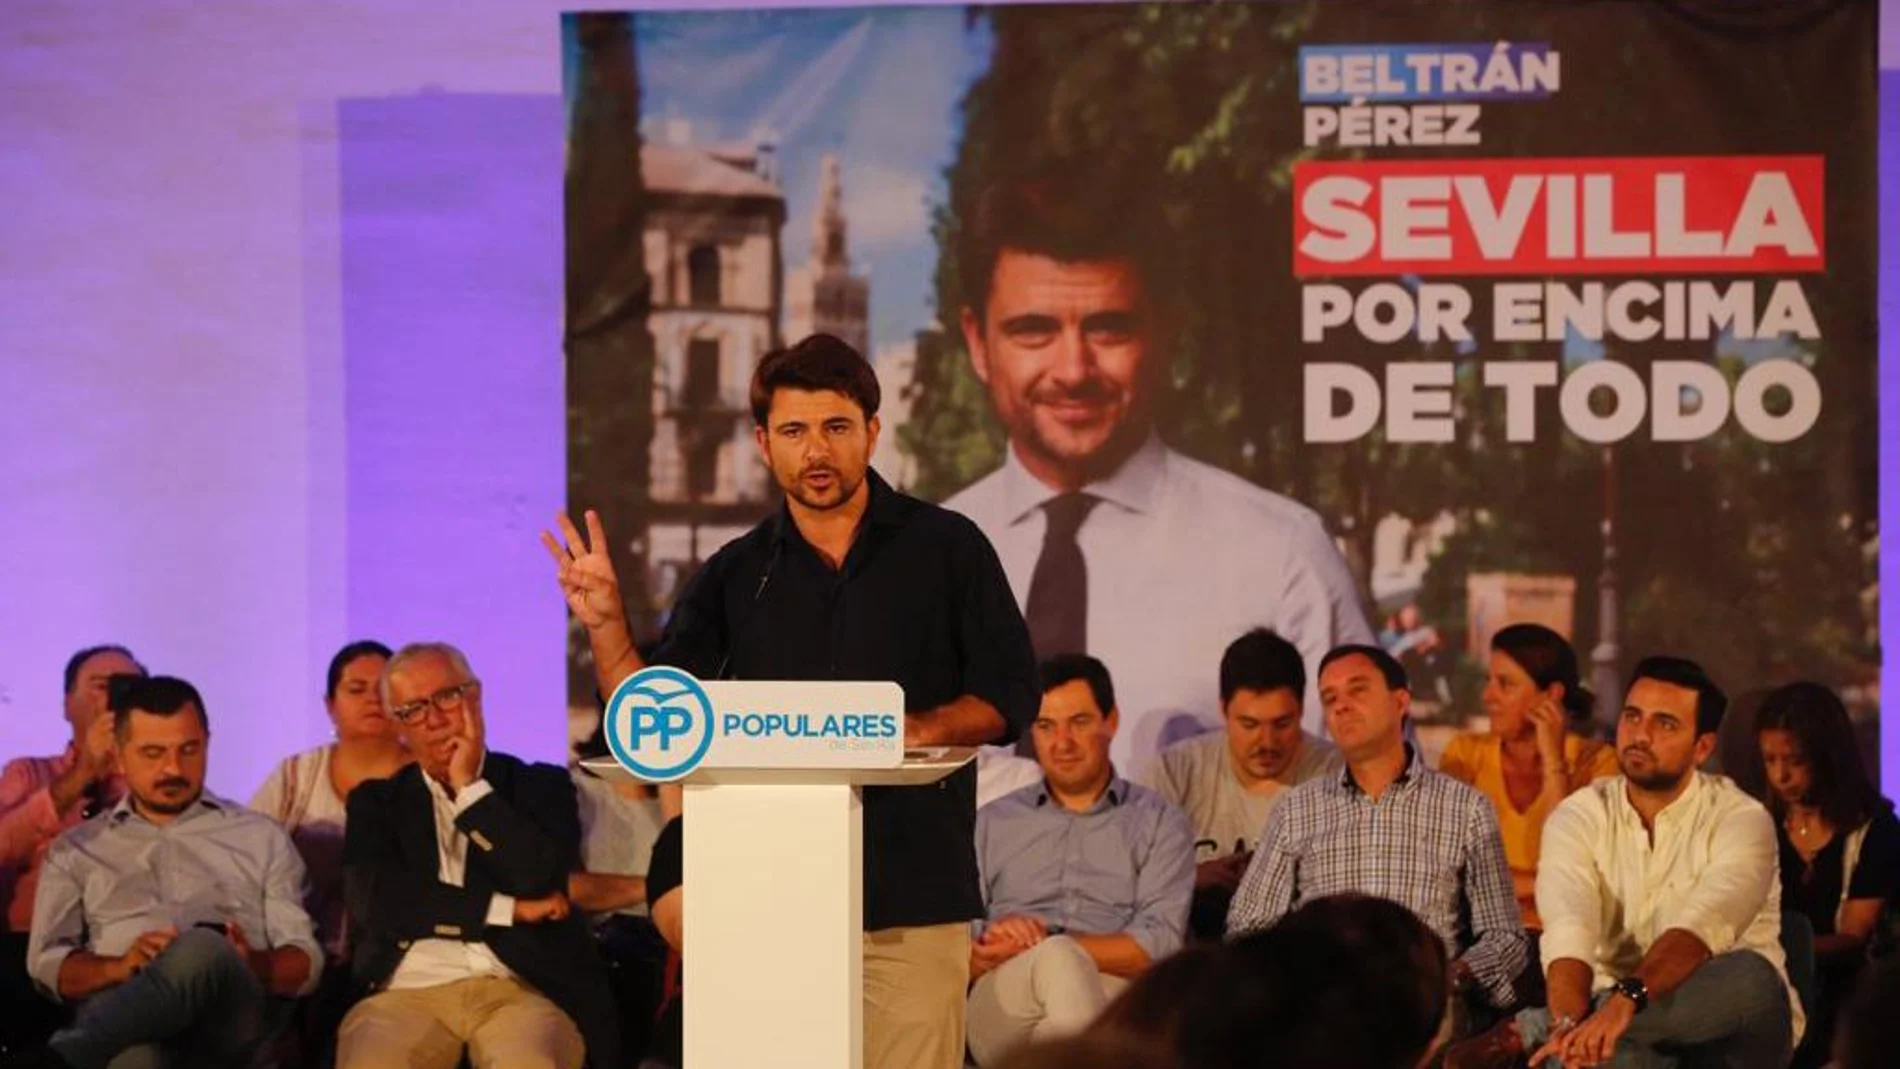 Beltrán Pérez intervino en la junta directiva de Distritos del PP de Sevilla, que contó con la presencia de Juanma Moreno, líder del PP-A